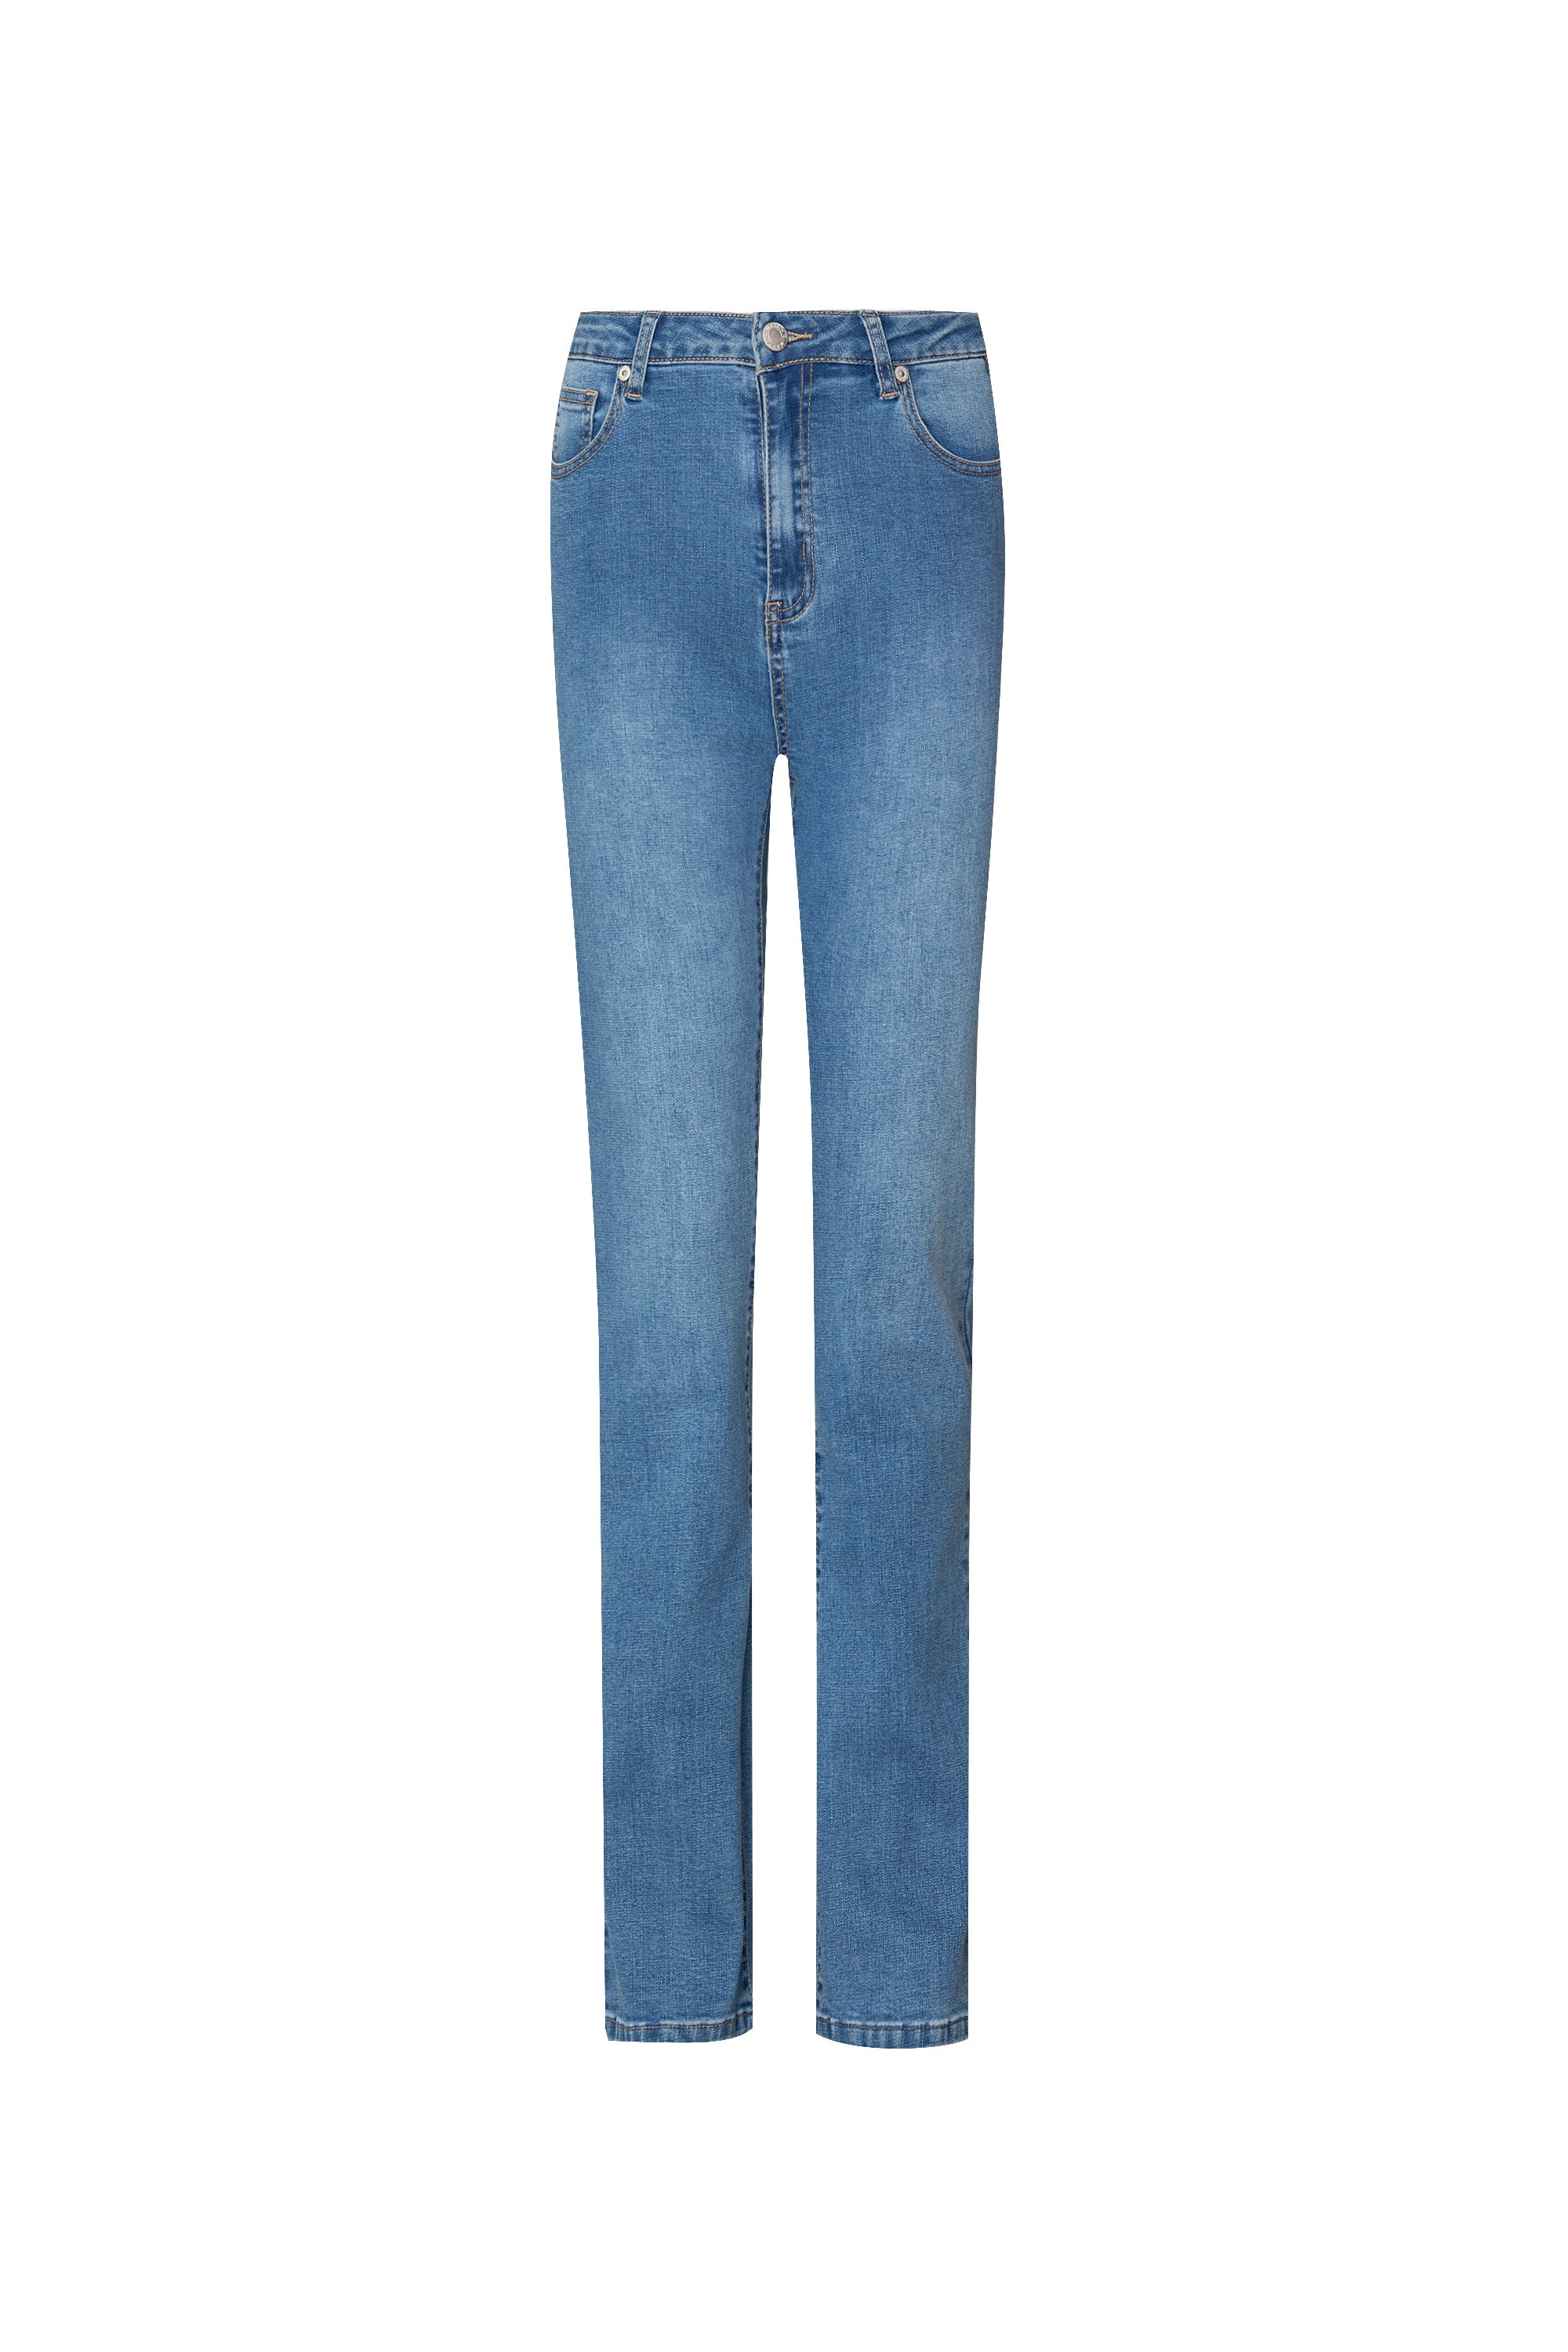 Dilana jeans